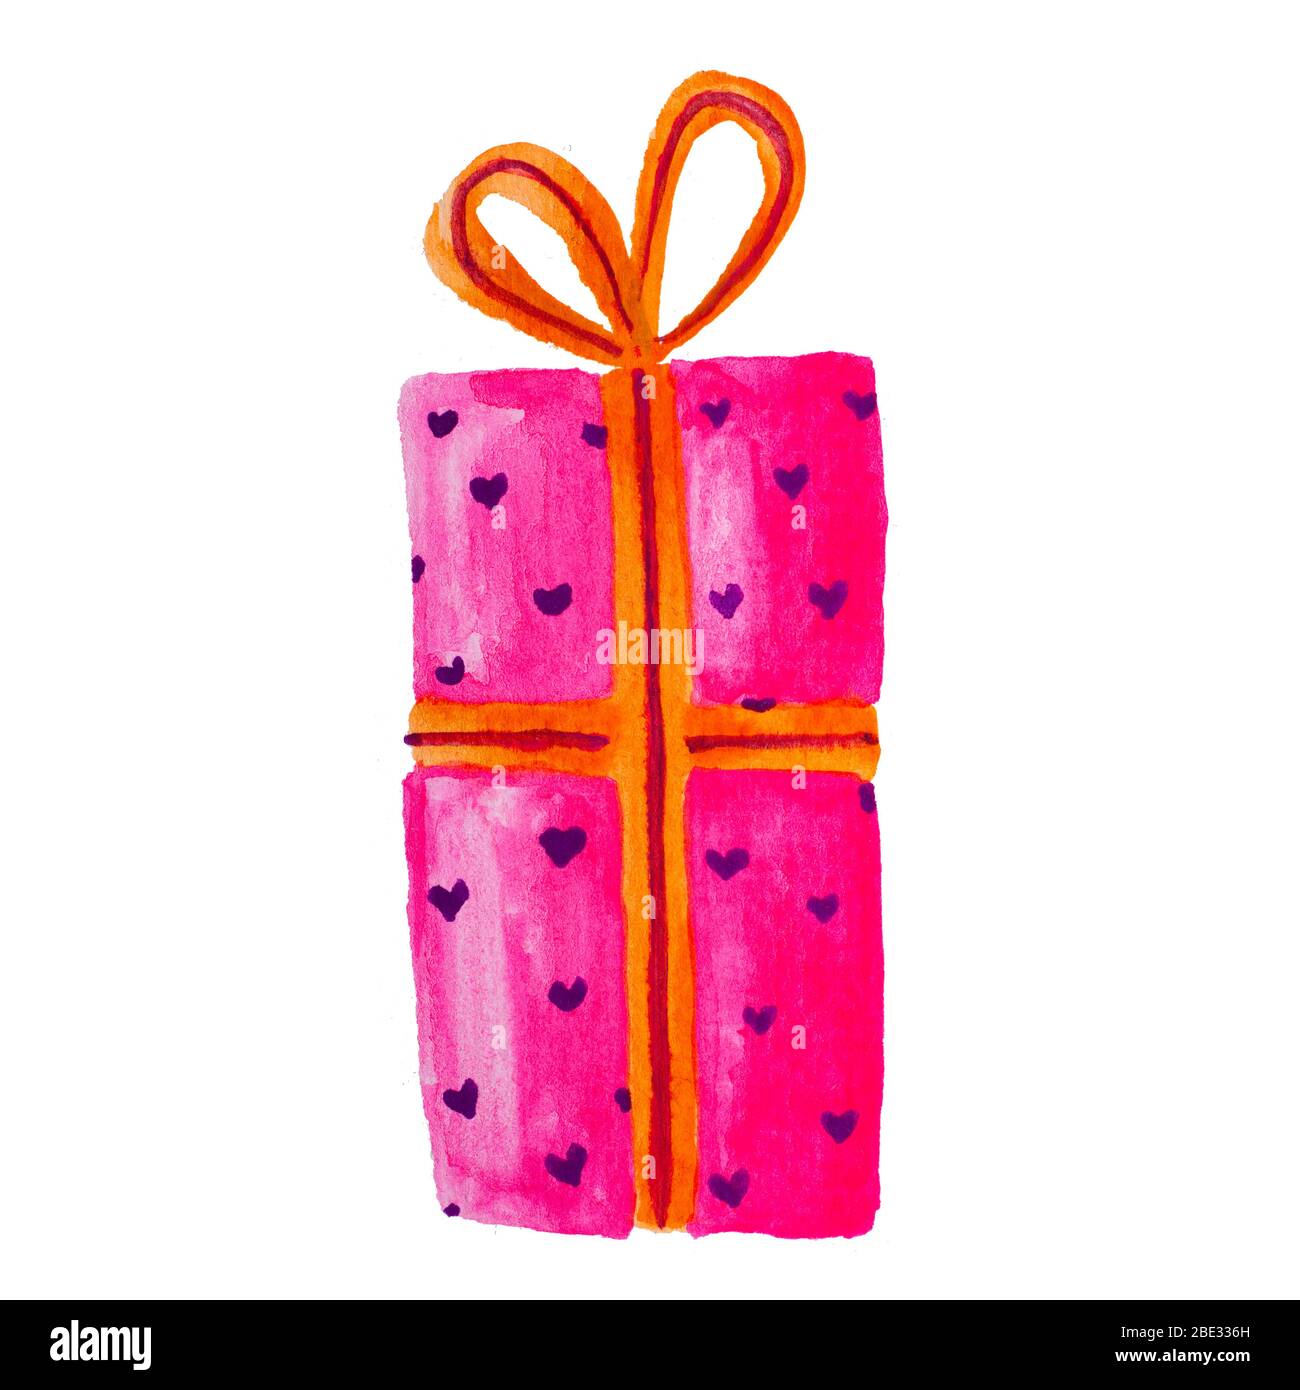 Acuarela pintura dibujo de colorido cumpleaños Navidad presente caja de regalo, aislado Foto de stock